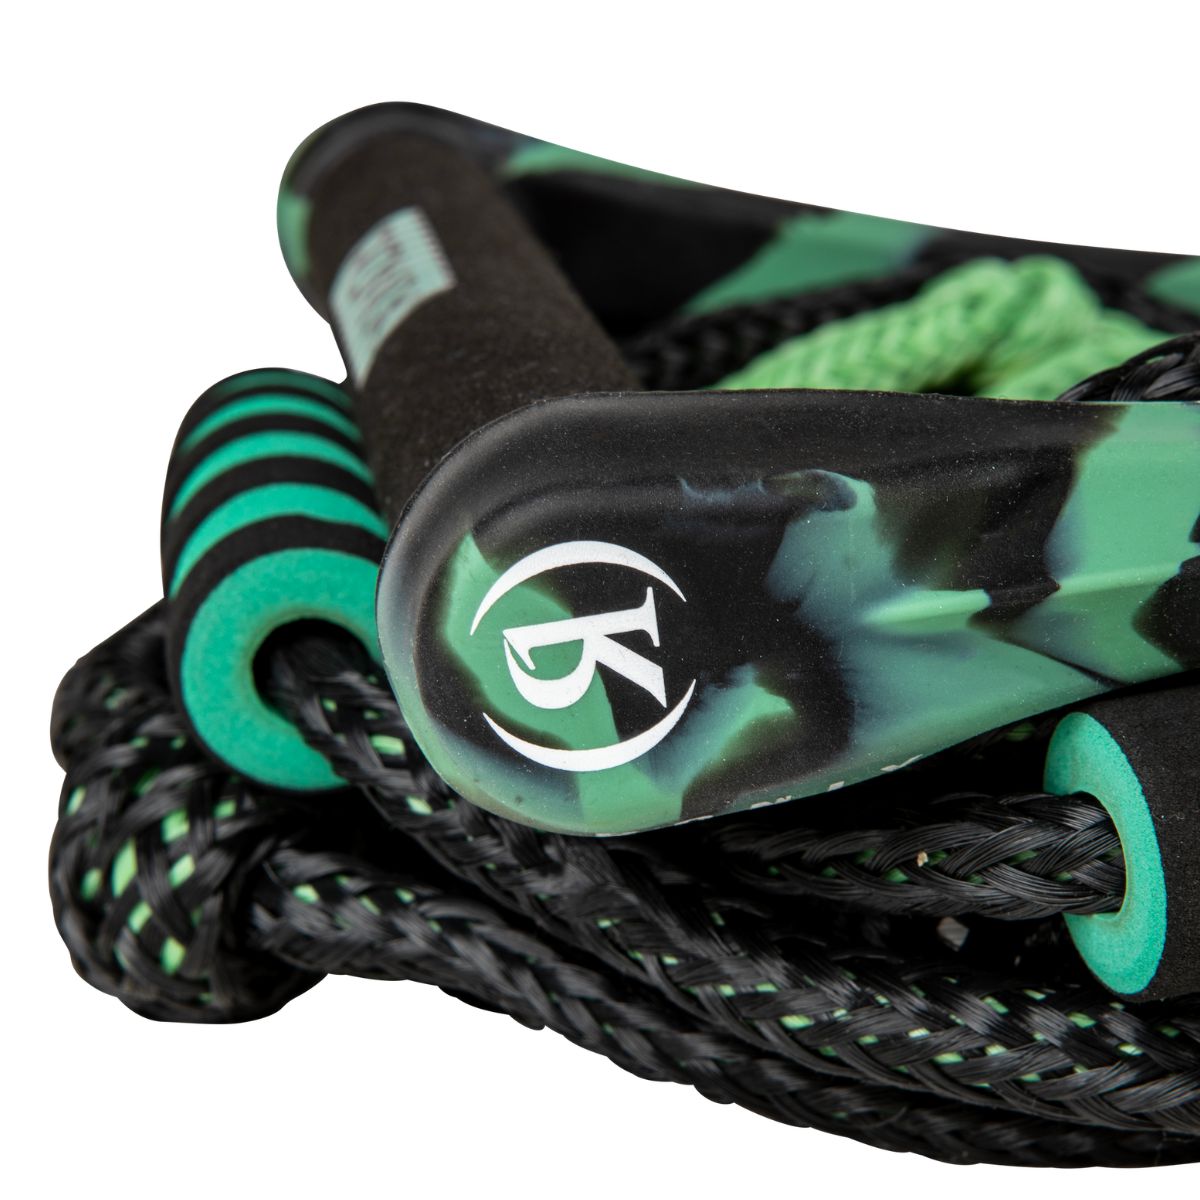 Ronix Spinner Wakesurf Rope in Jade / Black - BoardCo